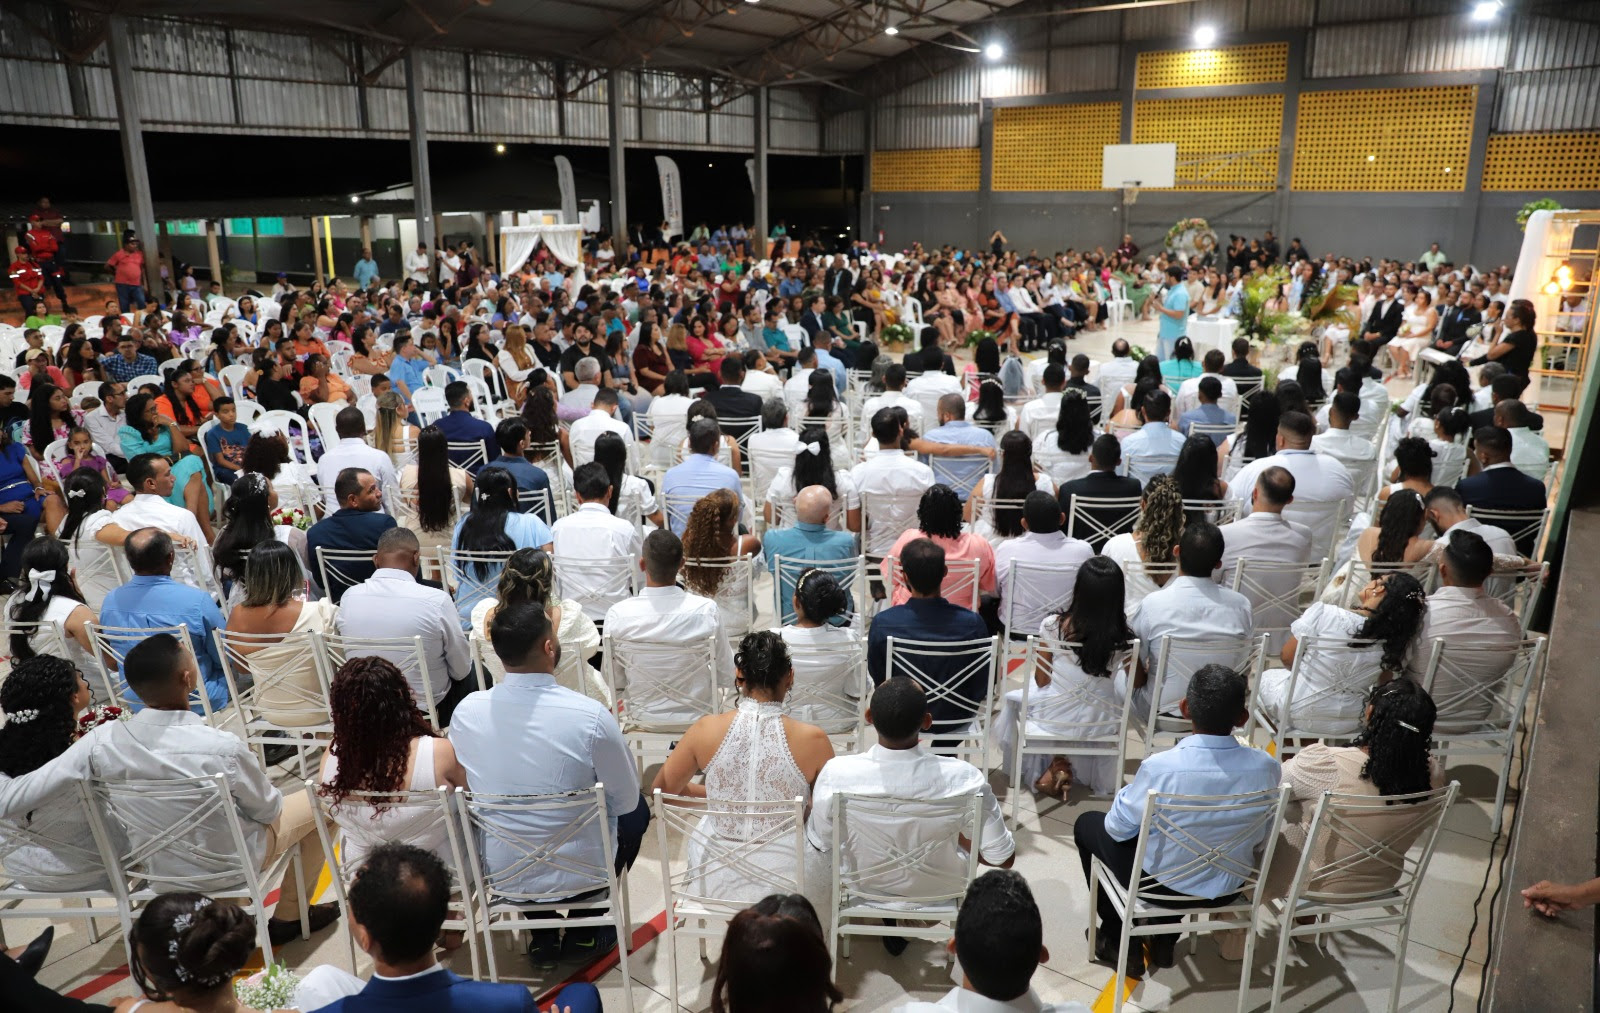 A cerimônia foi realizada na Escola Municipal Joaquim Sabino, no residencial Parque do Lago, e contou com mais de 500 convidados, além dos casais.